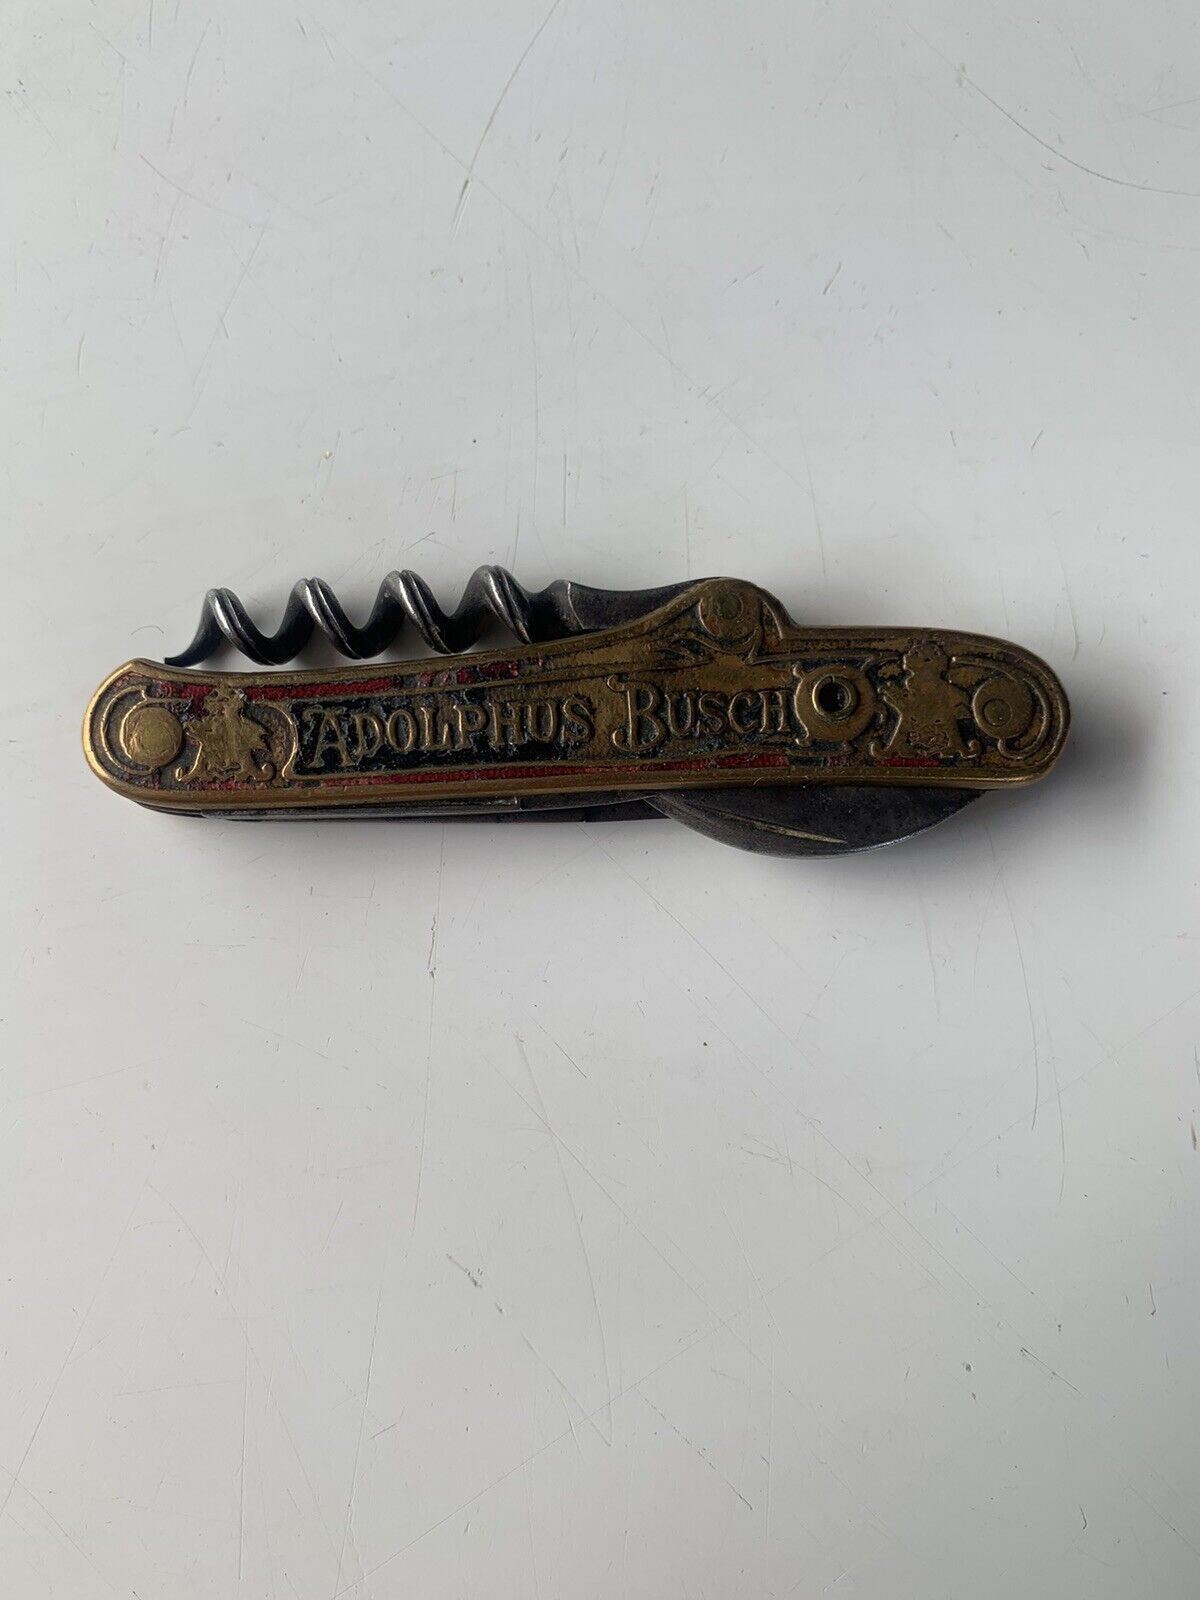 VINTAGE ANHEUSER - BUSCH Pocket knife corkscrew German made 1900s